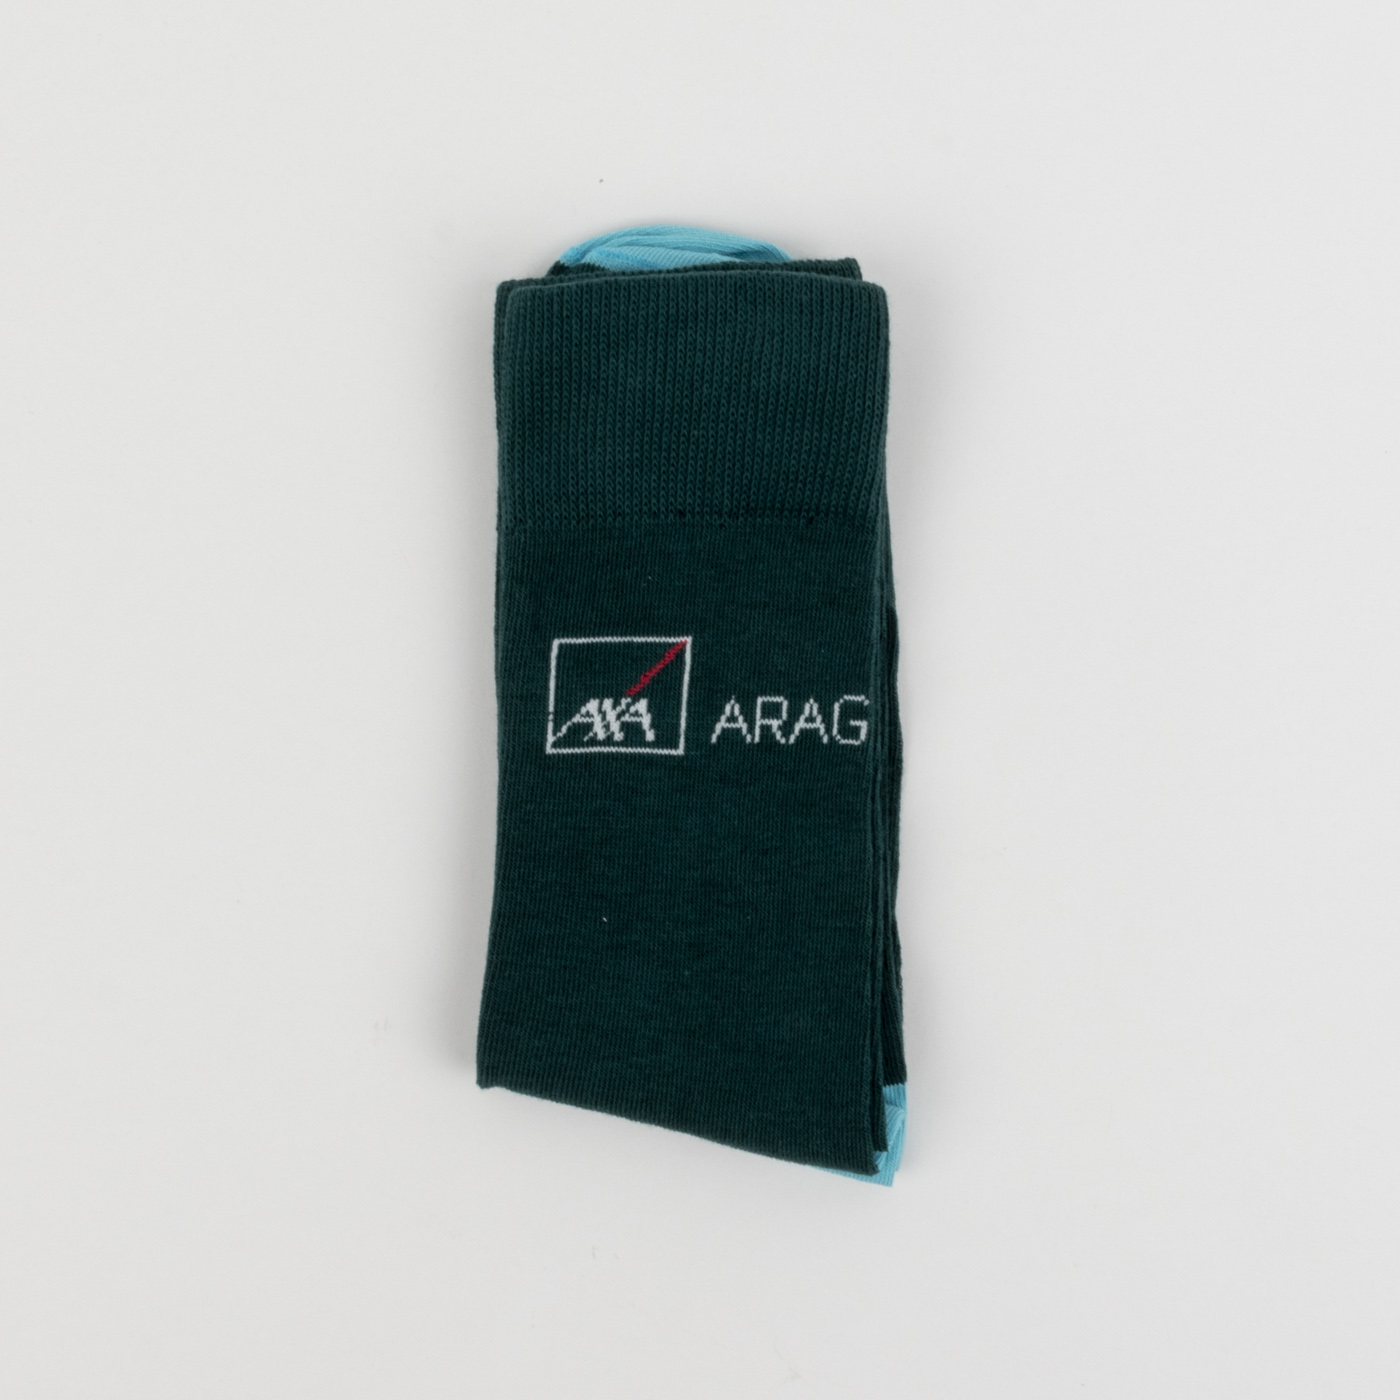 Axa Arag – Customer First